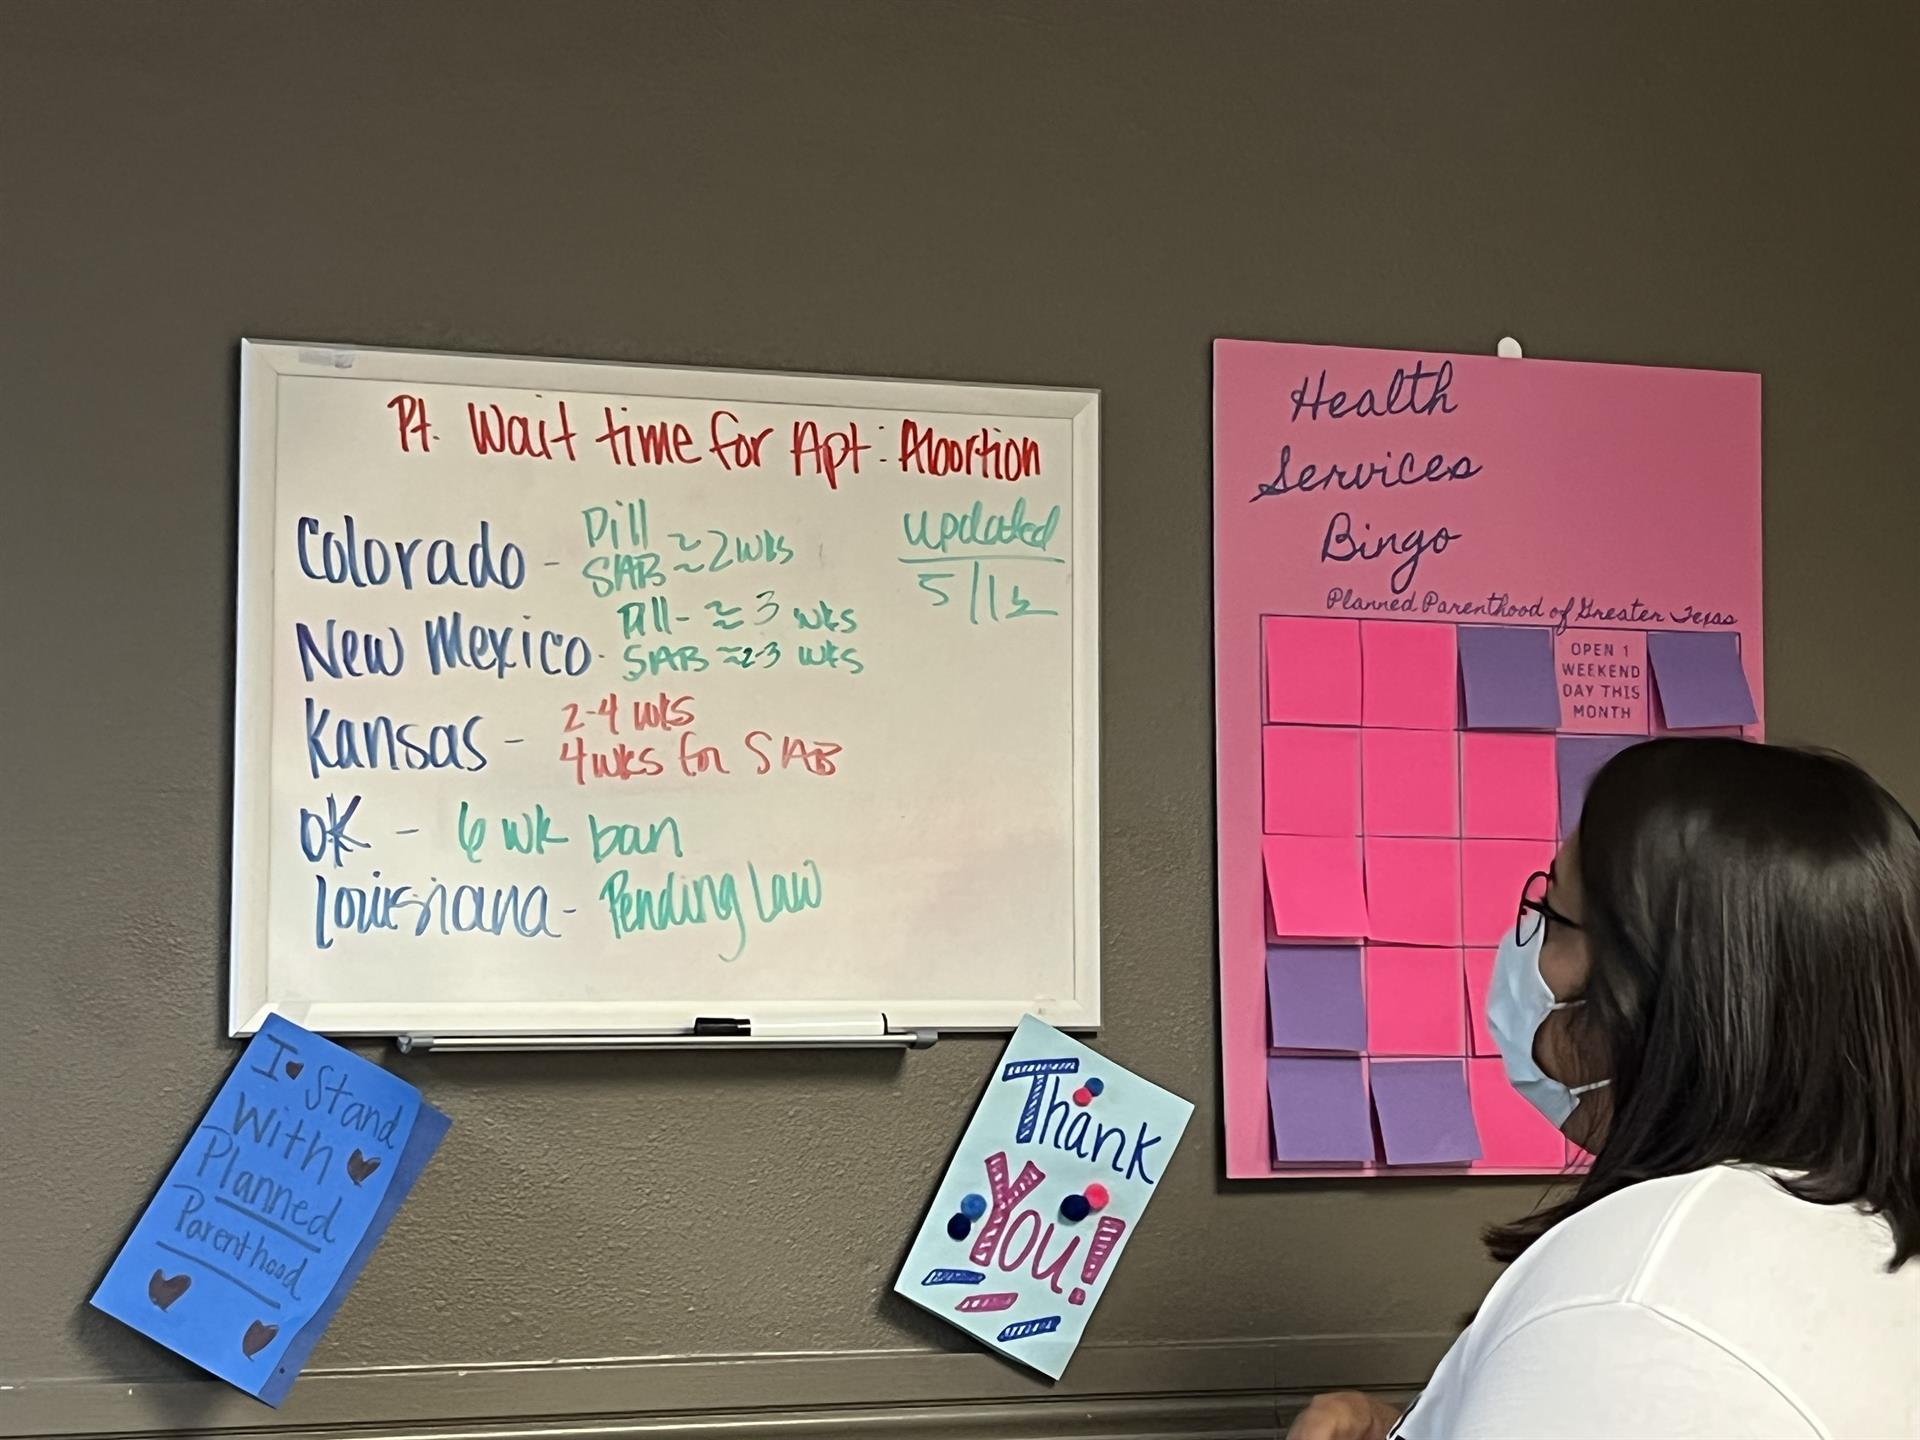 Miranda Aguirre, directora del centro de salud de la organización Planned Parenthood, observa una pizarra blanca que muestra los tiempos de espera para abortar en clínicas fuera de Texas, el 24 de mayo de 2022, en El Paso, Texas (EE.UU). EFE/ Lucía Leal
